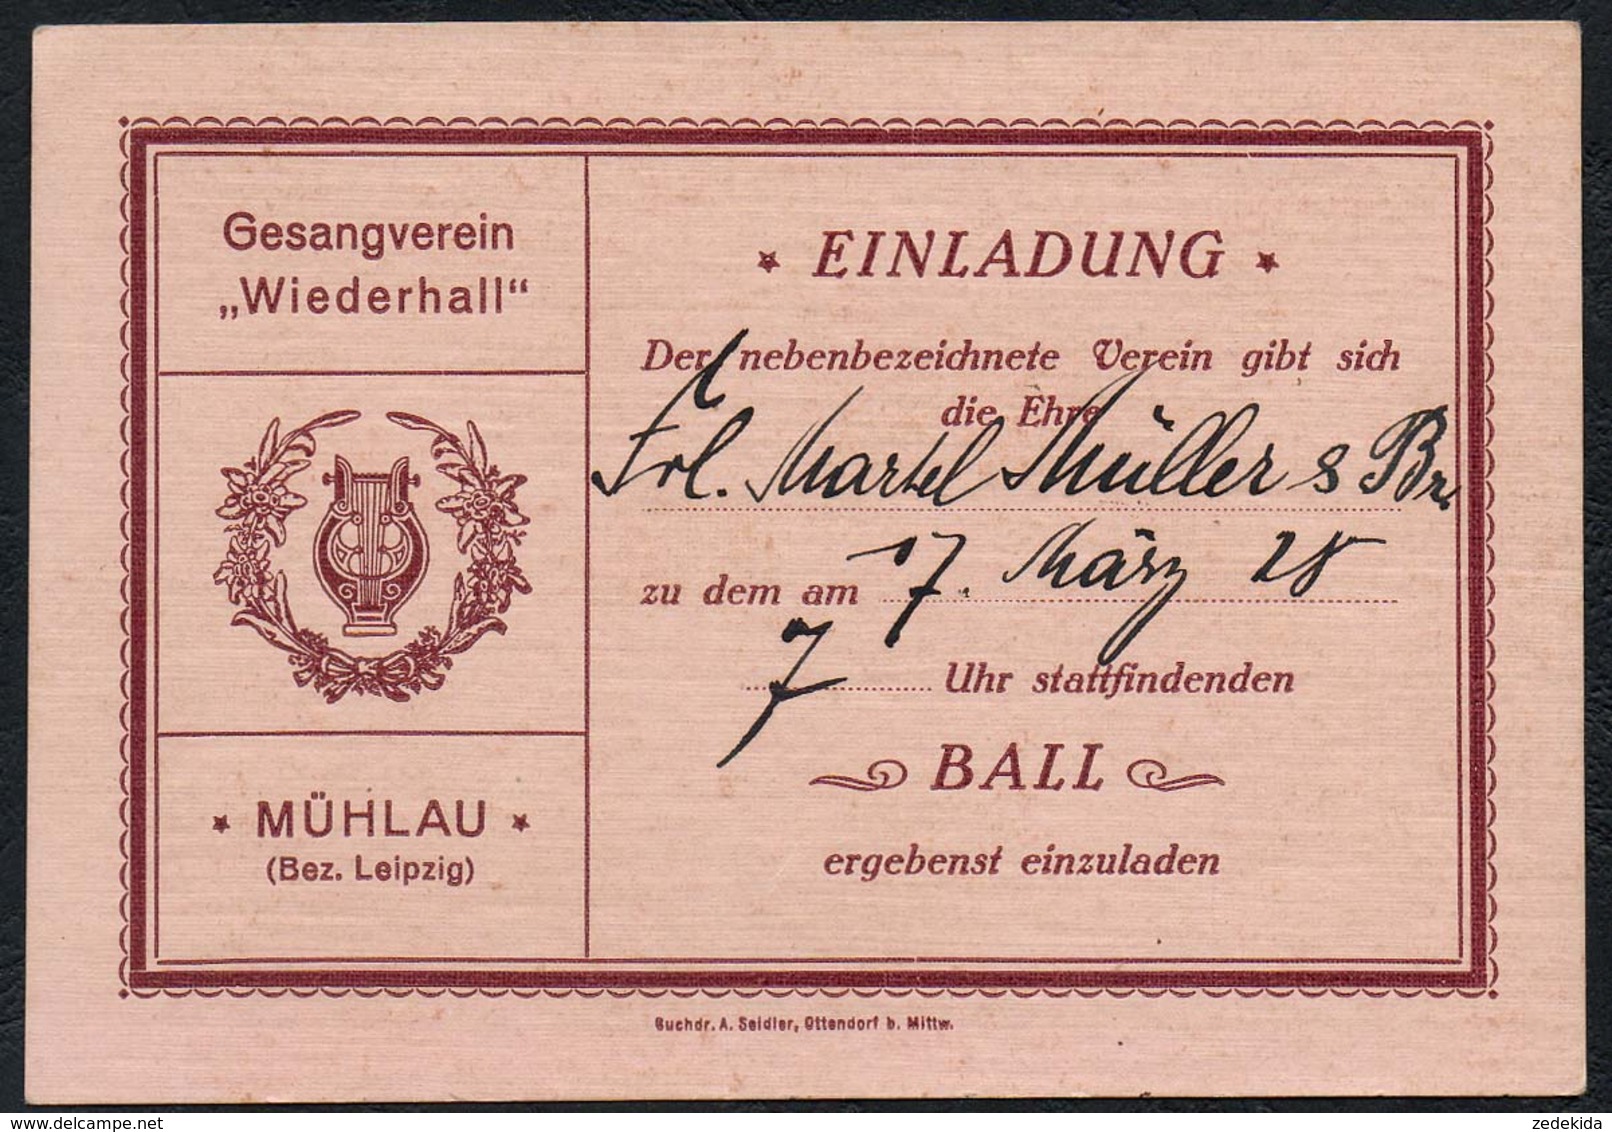 C0286 - TOP Mühlau - Gesangverein Wiederhall - Einladung Eintrittskarte Ball - Stempel Rückseite - A Seidler Ottendorf - Eintrittskarten